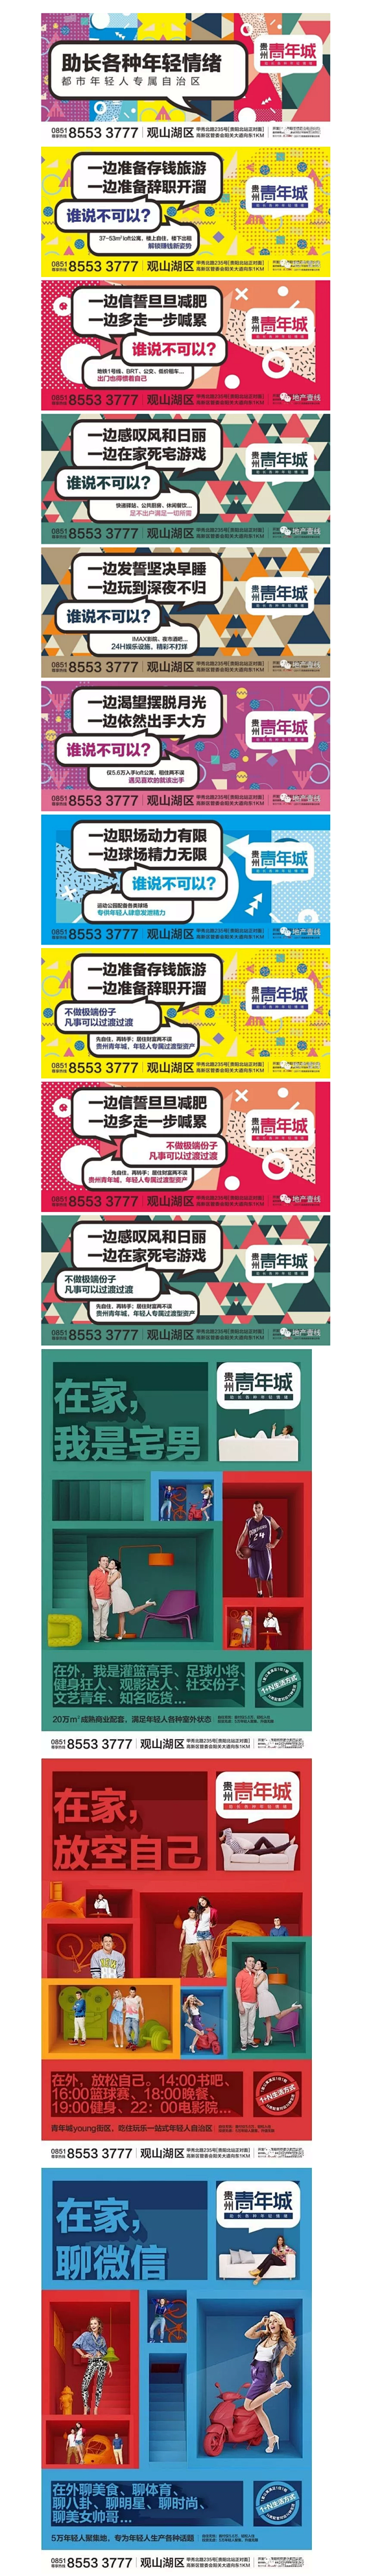 省广最新青年公寓广告